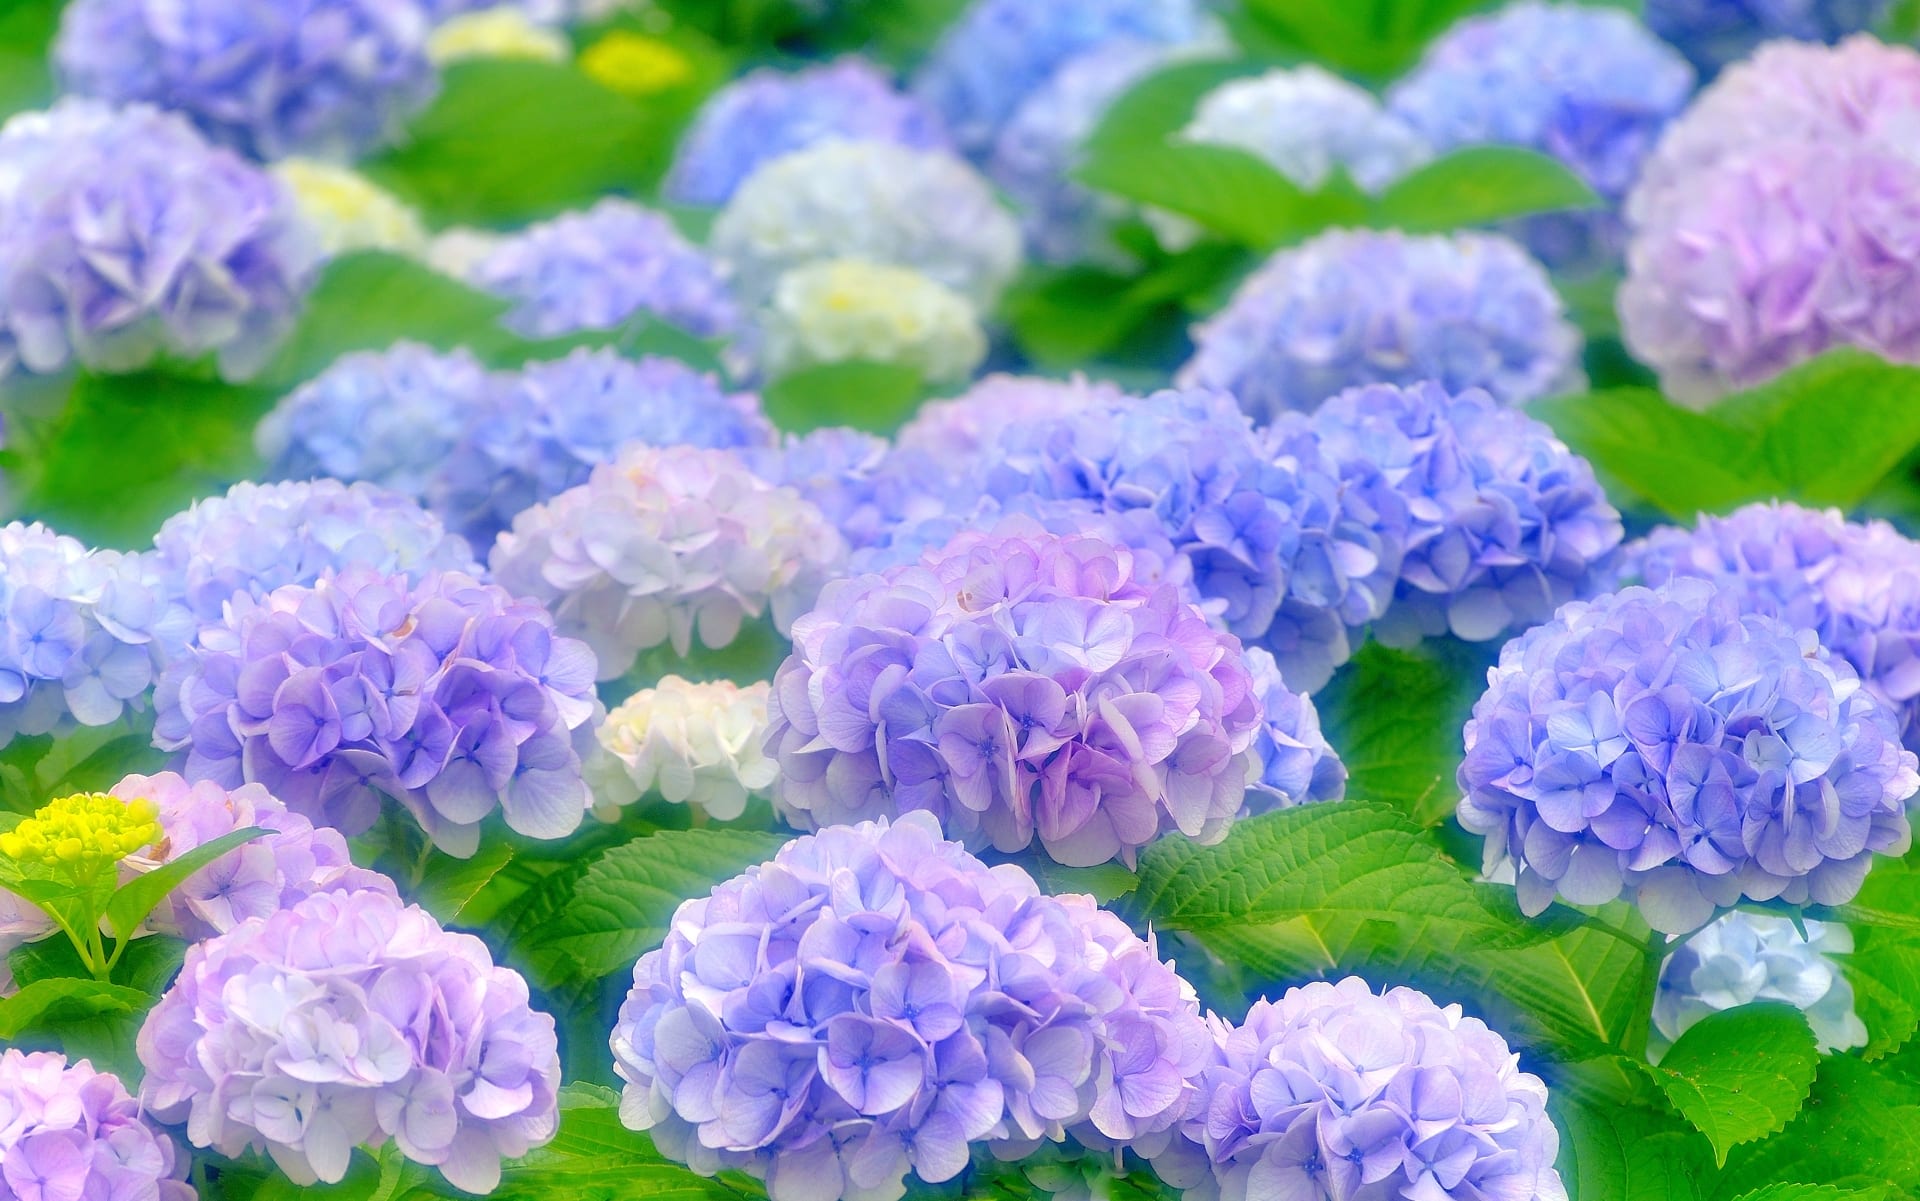 Hoa mau xanh lam